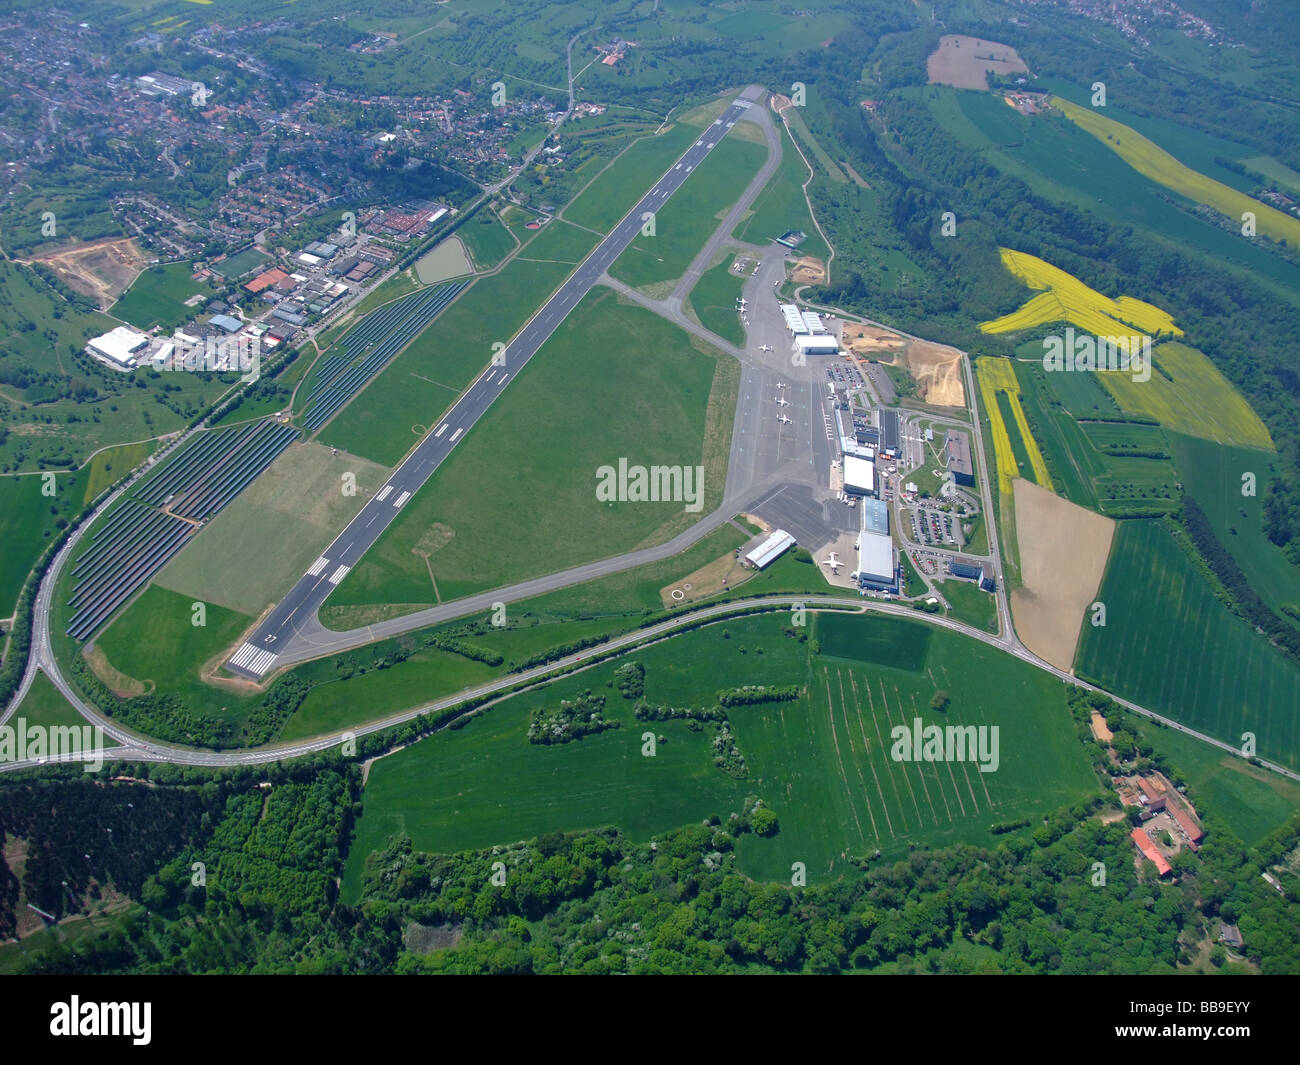 Luftbild von Terminals und Start-und Landebahn des Flughafens Saarbrücken Ensheim / Flughafen (Deutschland) - auf der linken Seite ein Feld von Photovoltaik-Panels Stockfoto